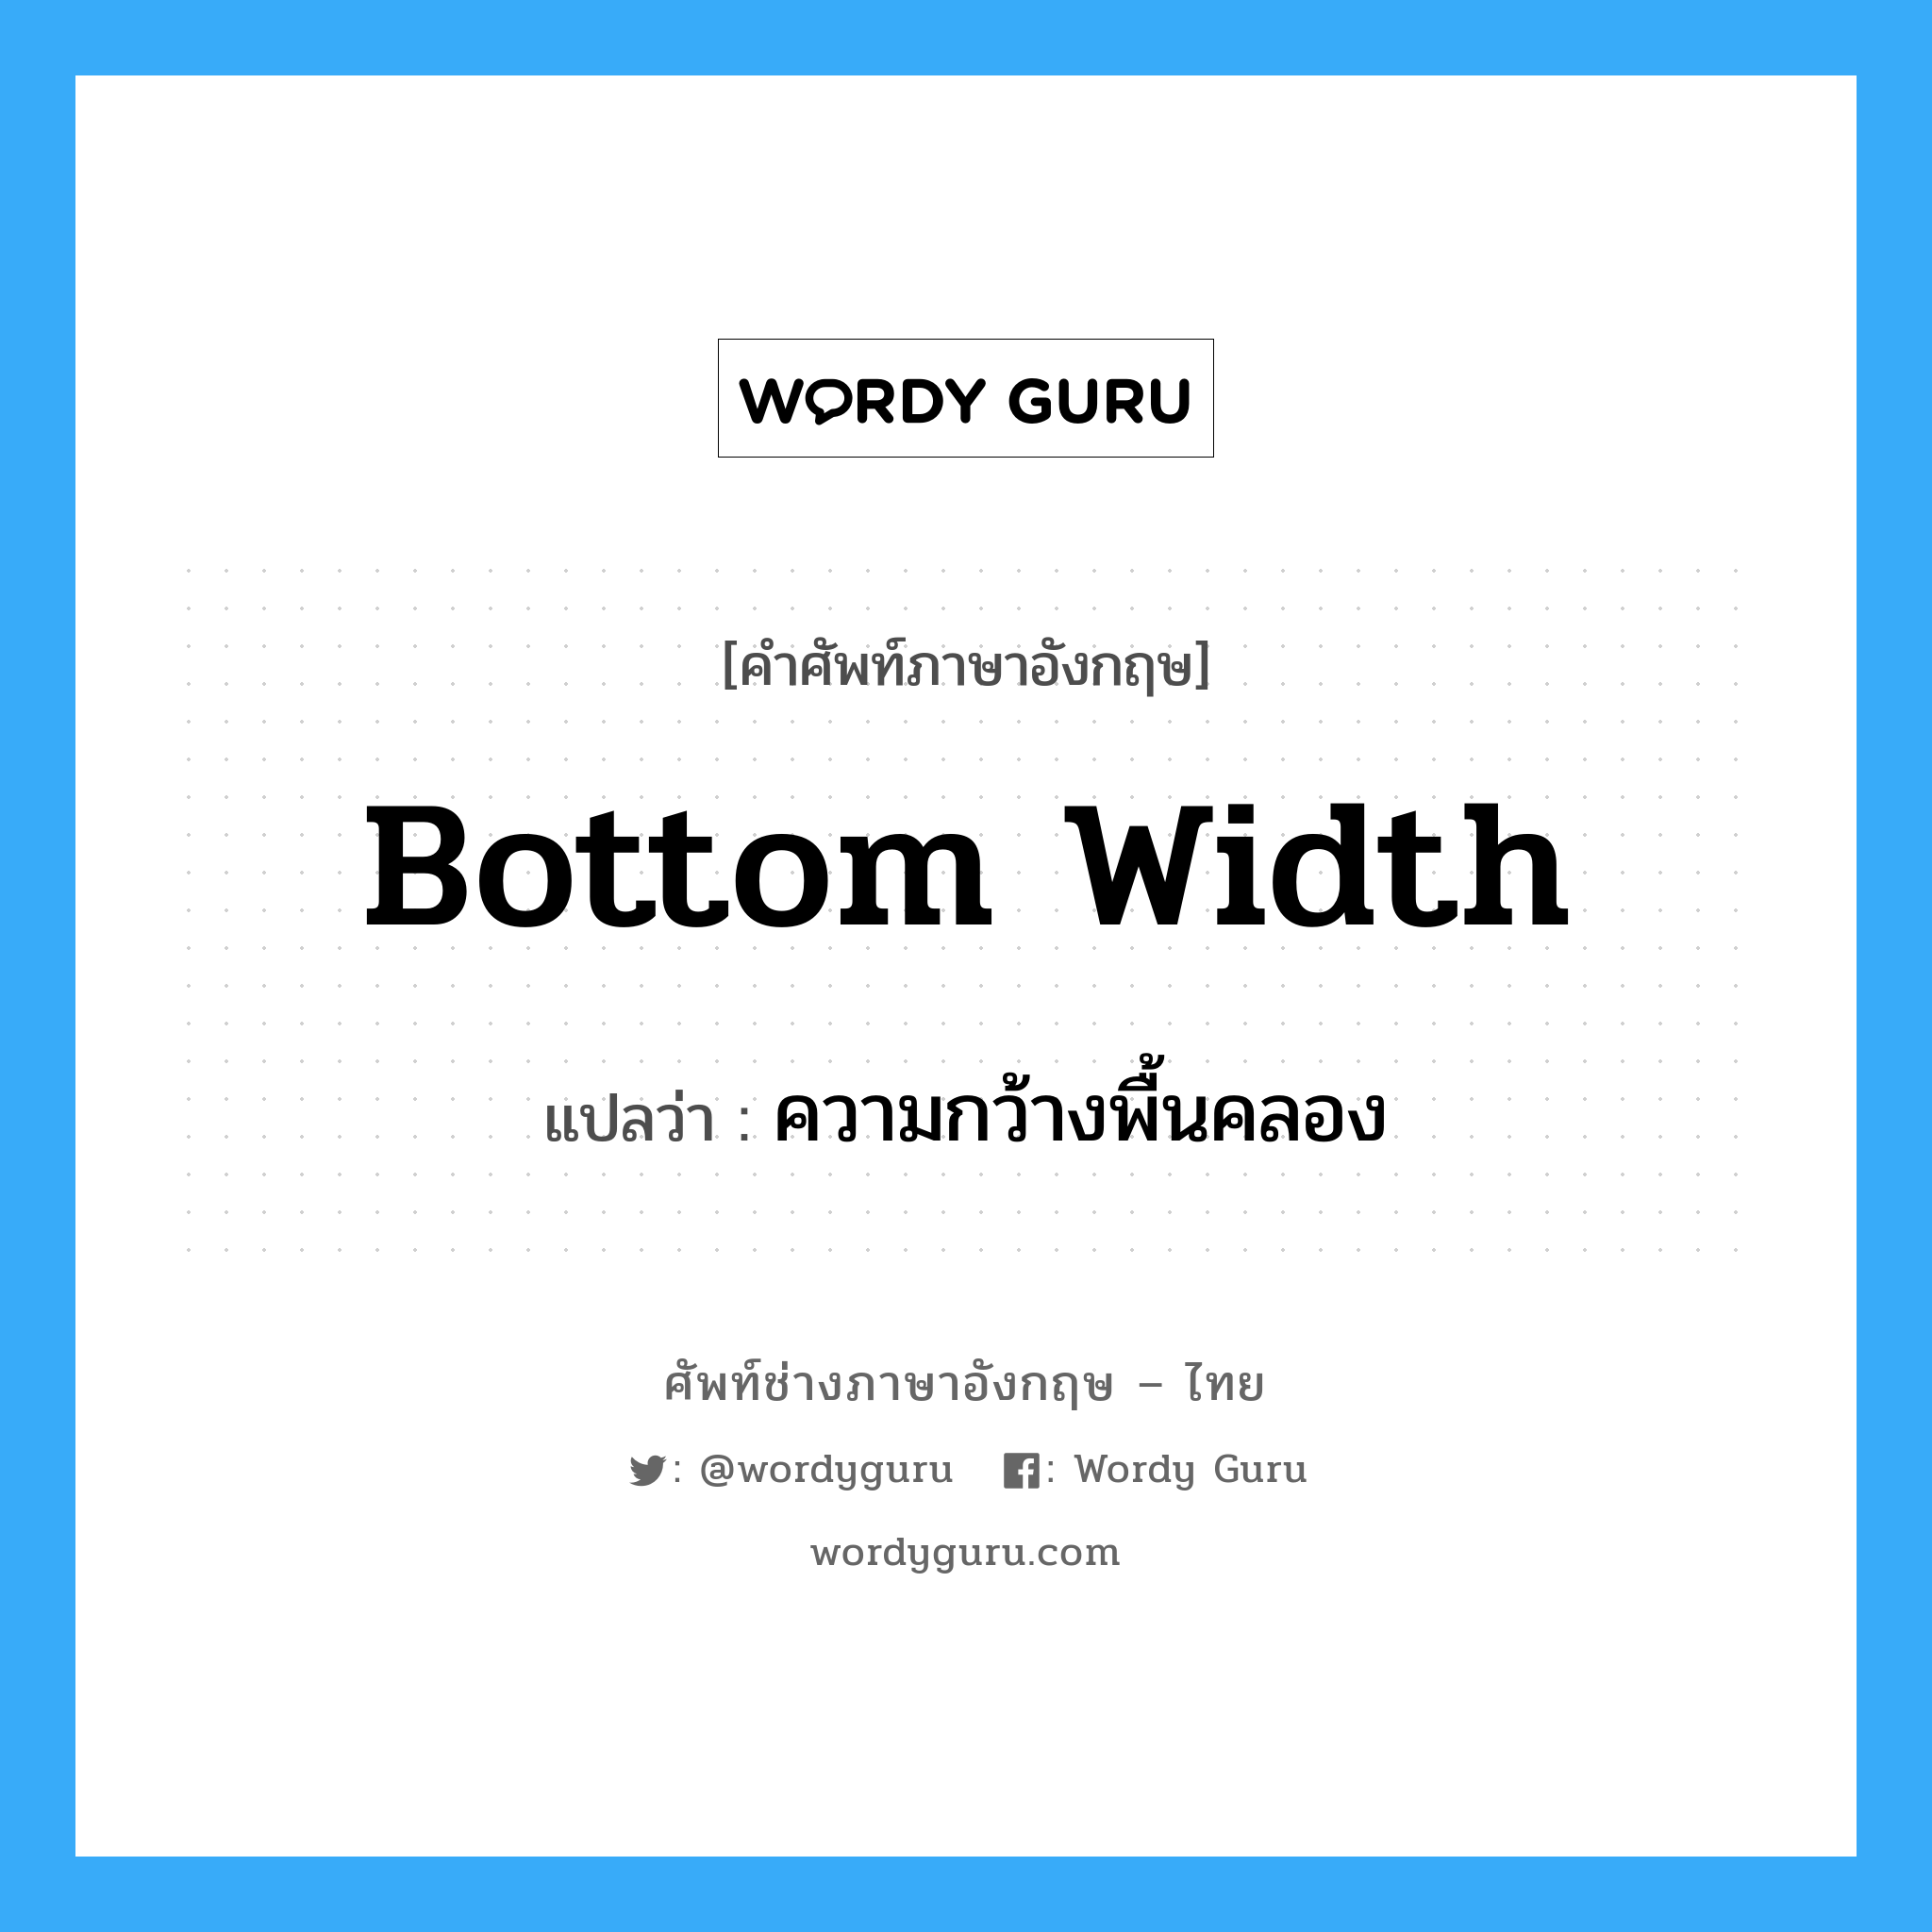 bottom width แปลว่า?, คำศัพท์ช่างภาษาอังกฤษ - ไทย bottom width คำศัพท์ภาษาอังกฤษ bottom width แปลว่า ความกว้างพื้นคลอง